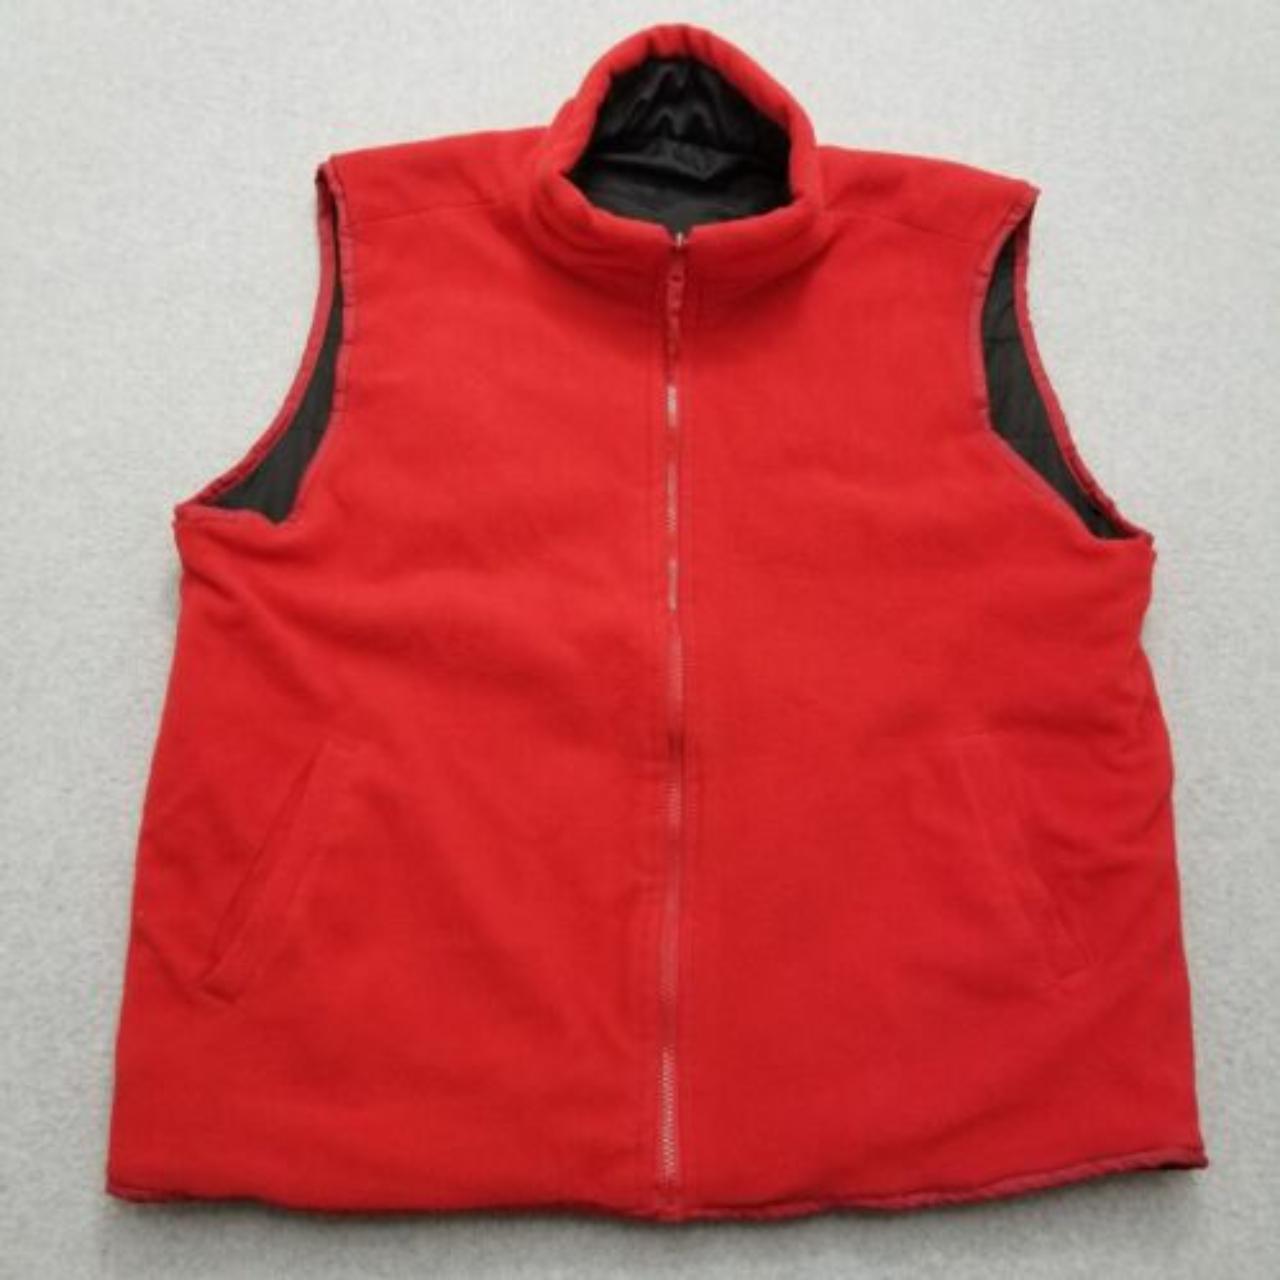 #Johnny #Sports Fleece #Jacket Men 3XL Red #Vest Zip... - Depop